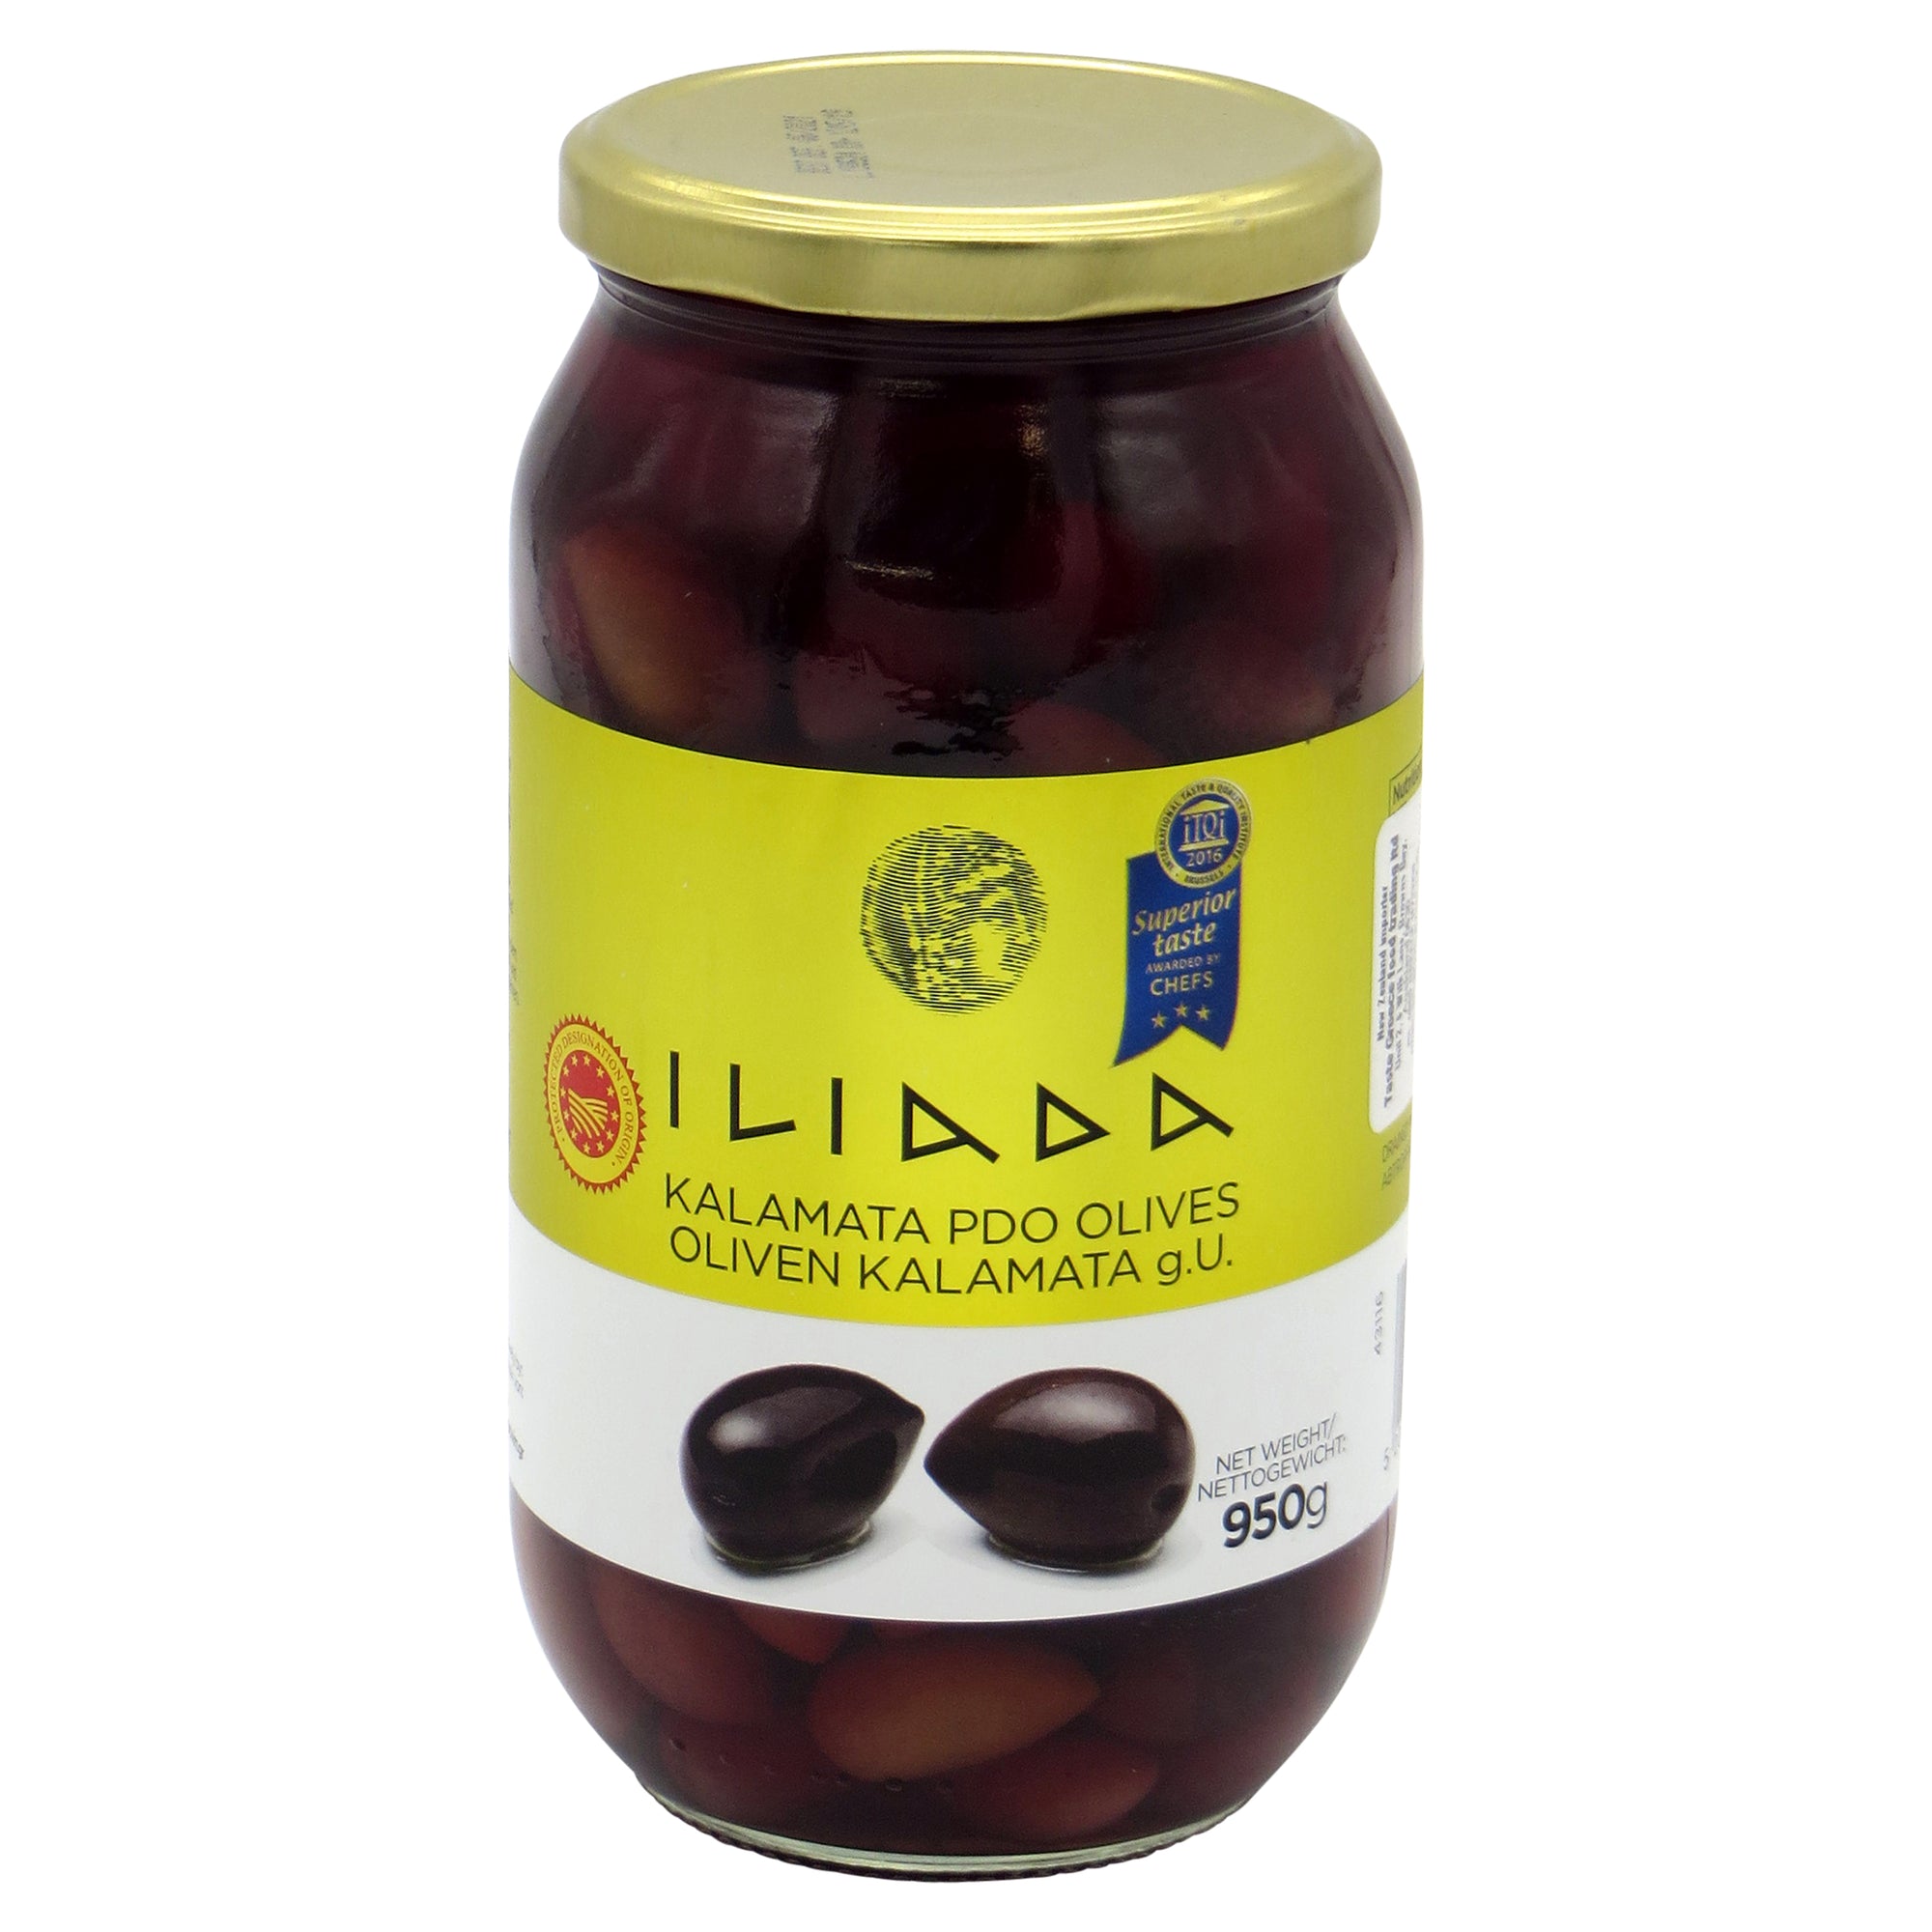 Kalamata Whole Olives PDO 'Iliada' 950g